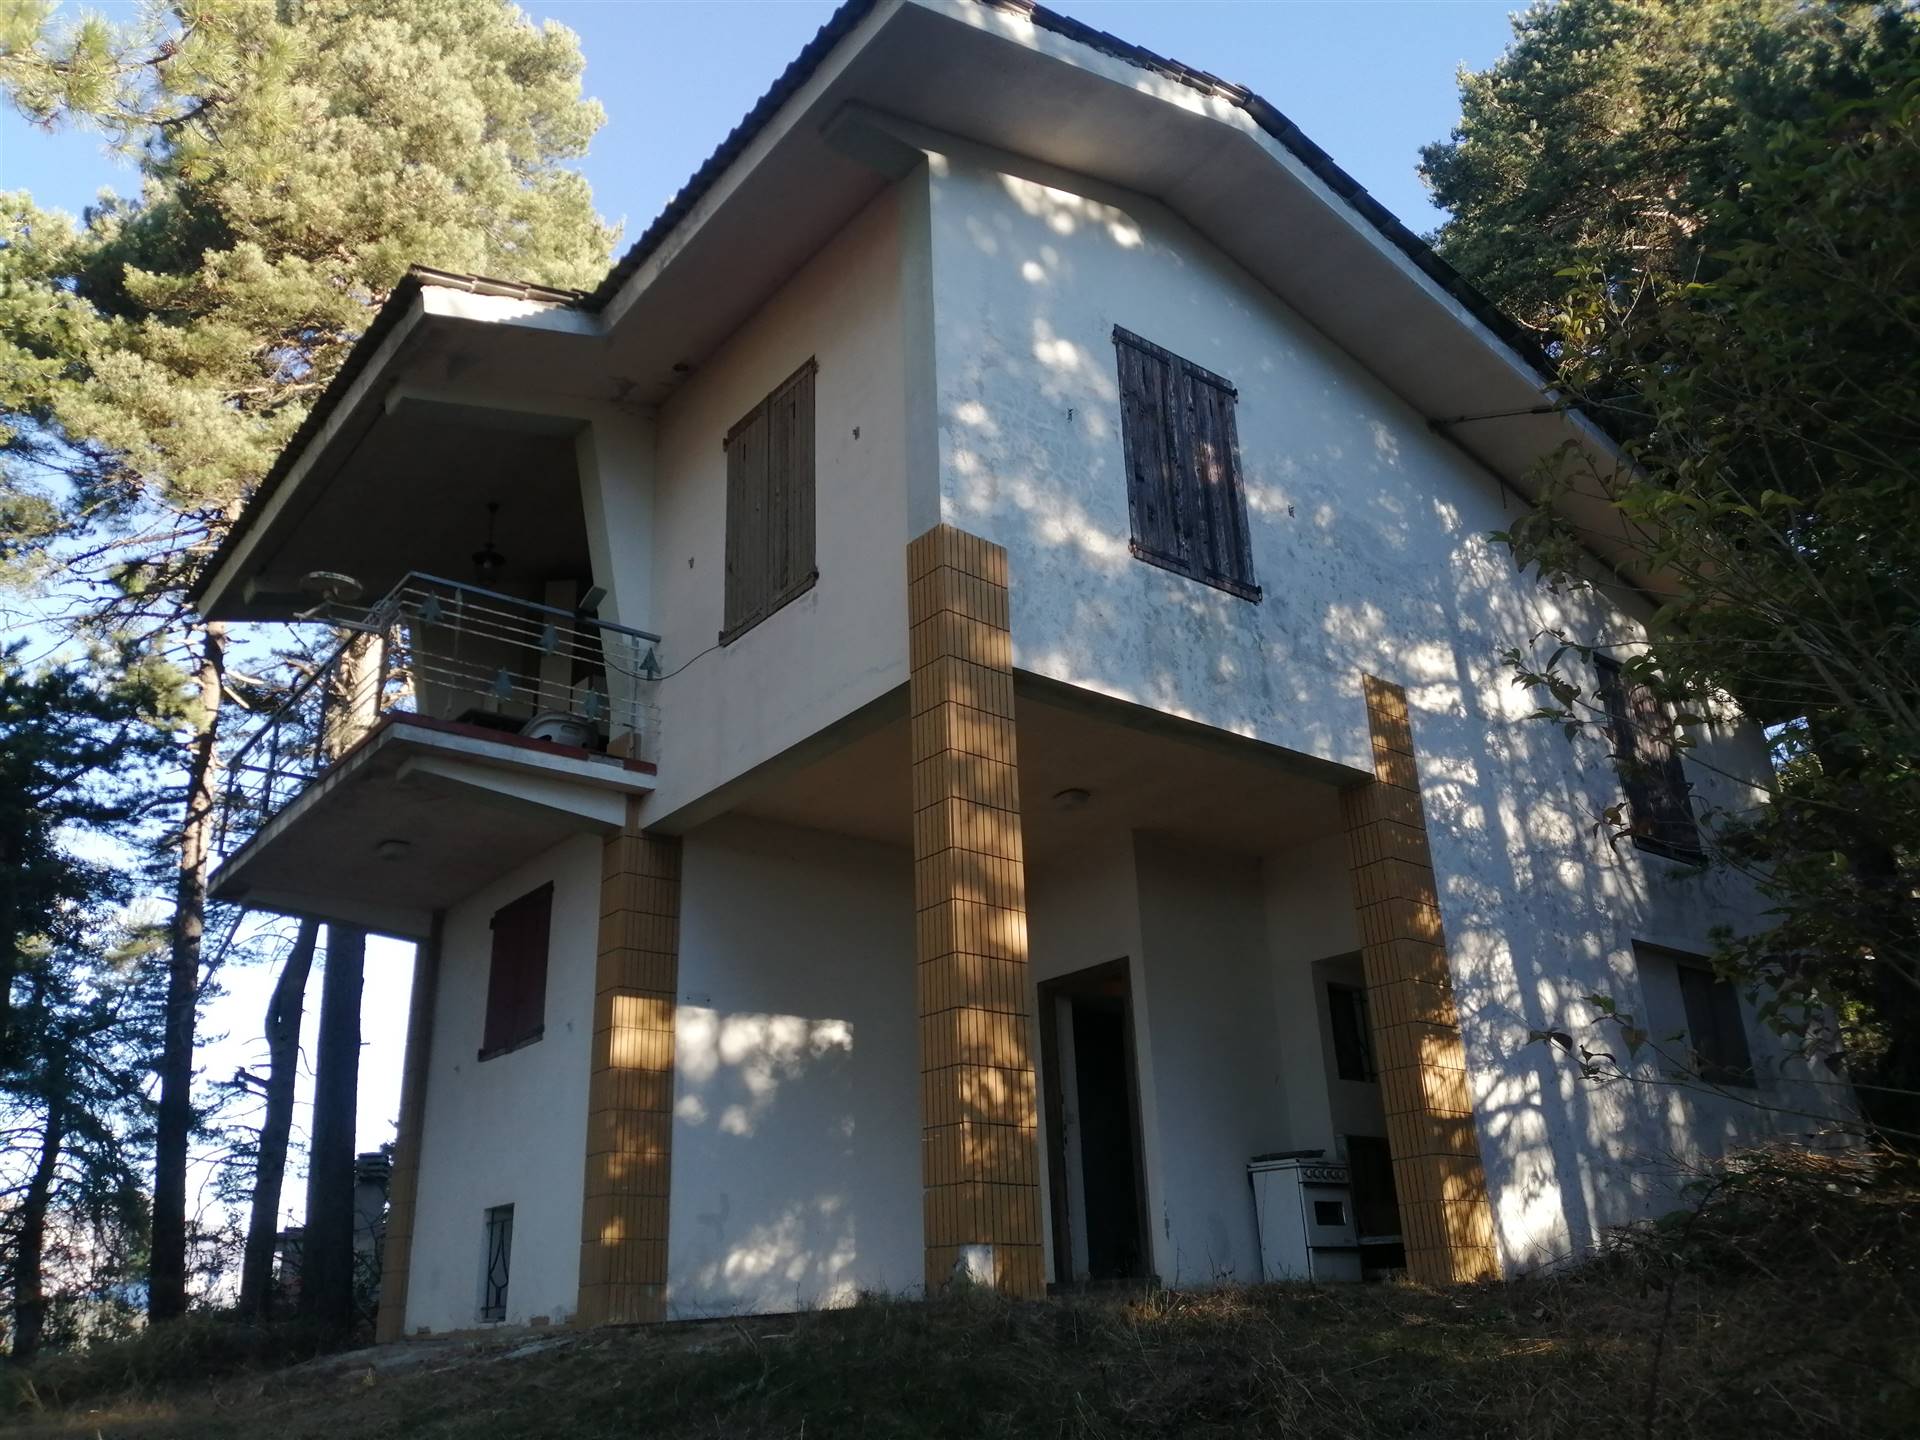 Villa in vendita a Bajardo, 6 locali, prezzo € 130.000 | PortaleAgenzieImmobiliari.it